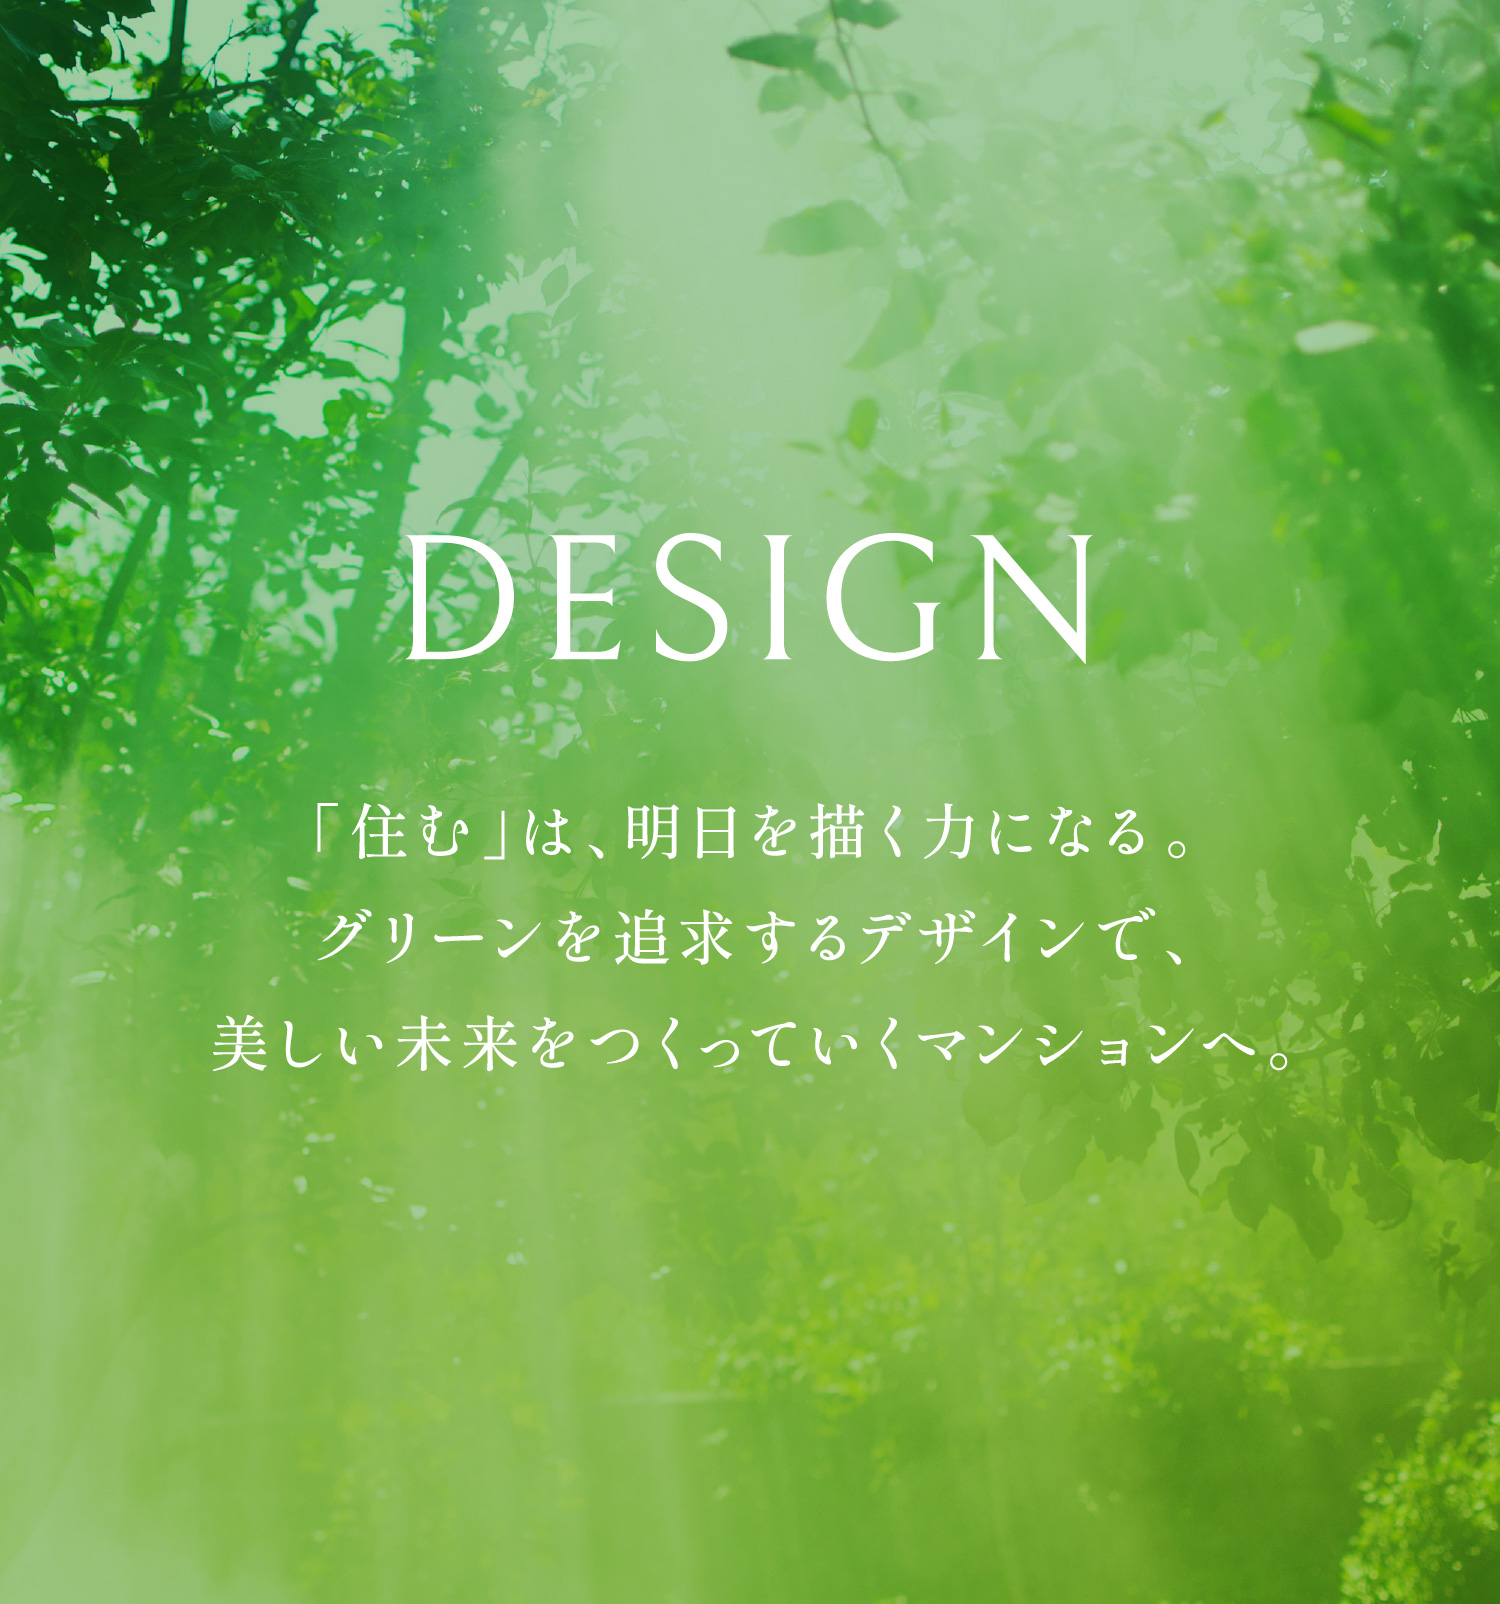 DESIGN 「住む」は、明日の描く力になる。グリーンを追求するデザインで、美しい未来をつくっていくマンションへ。